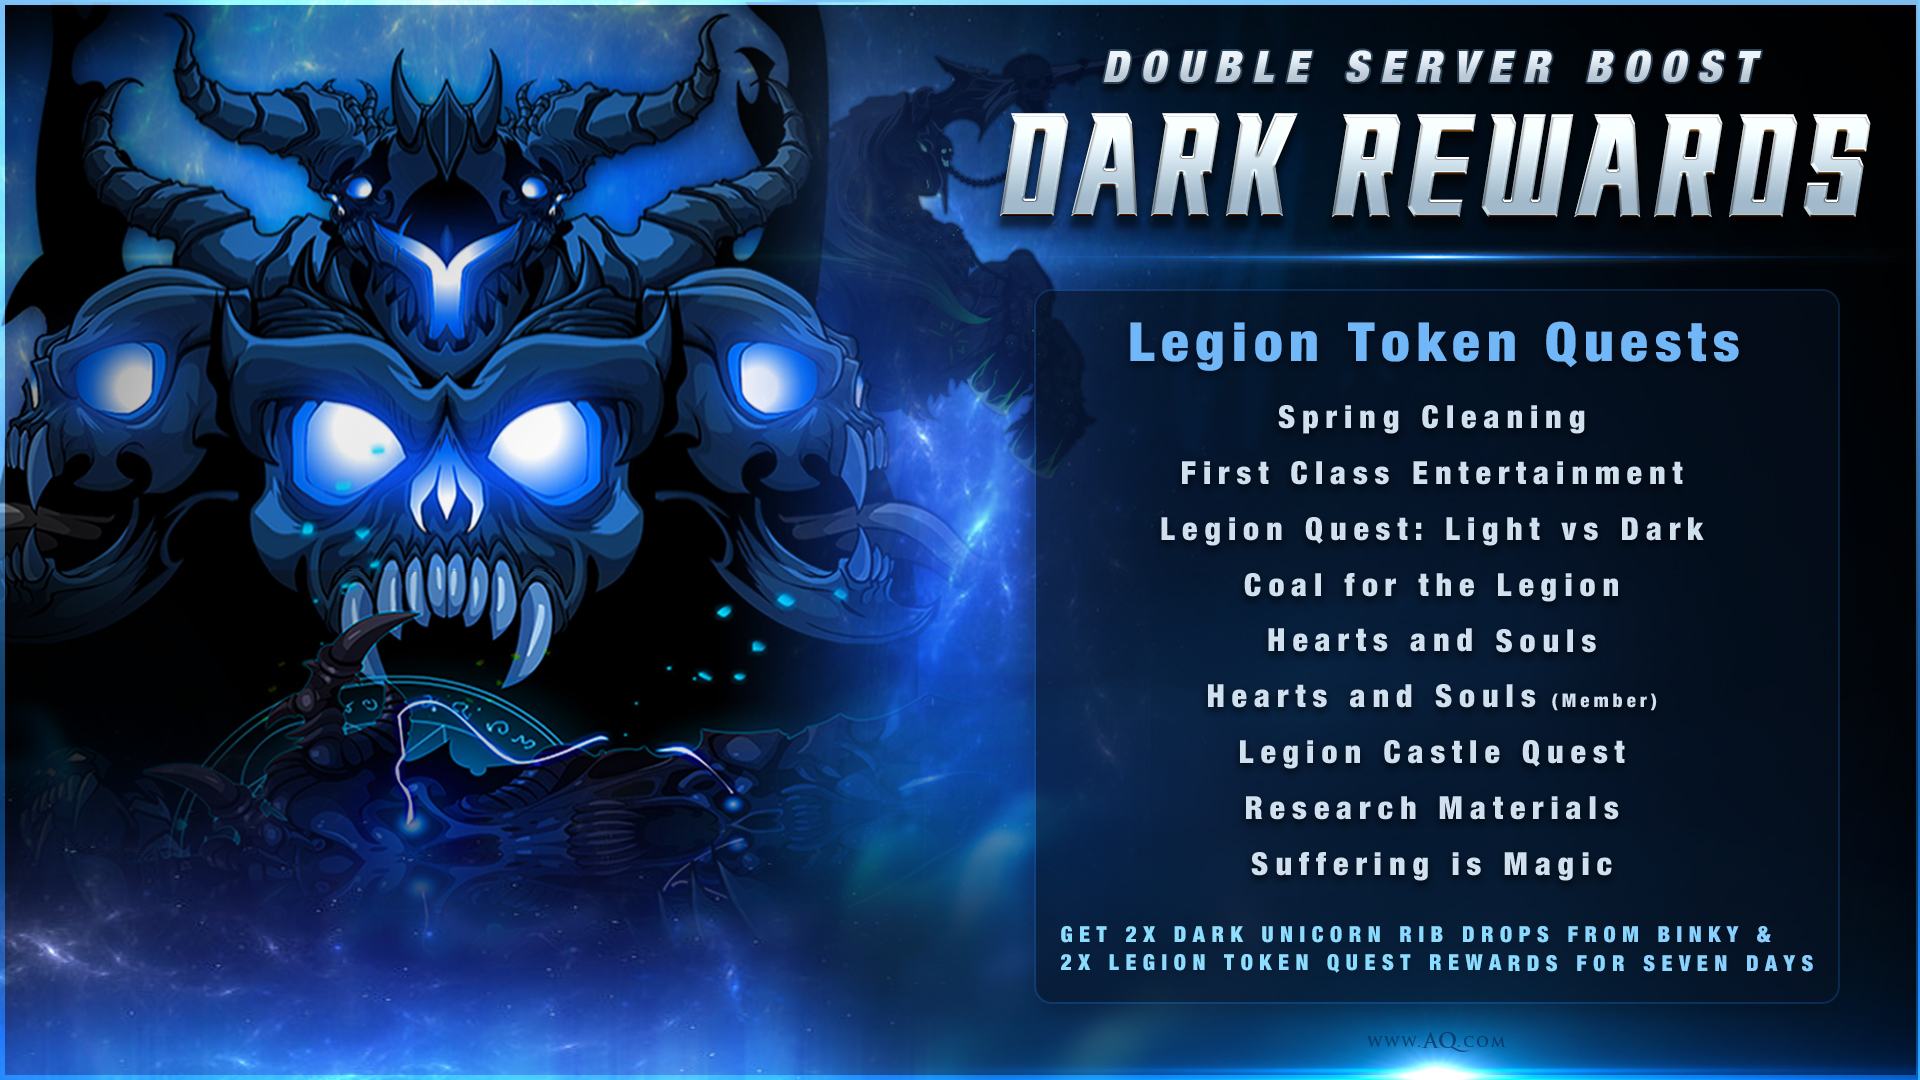 Dark Rewards Boost on Artix Entertainment